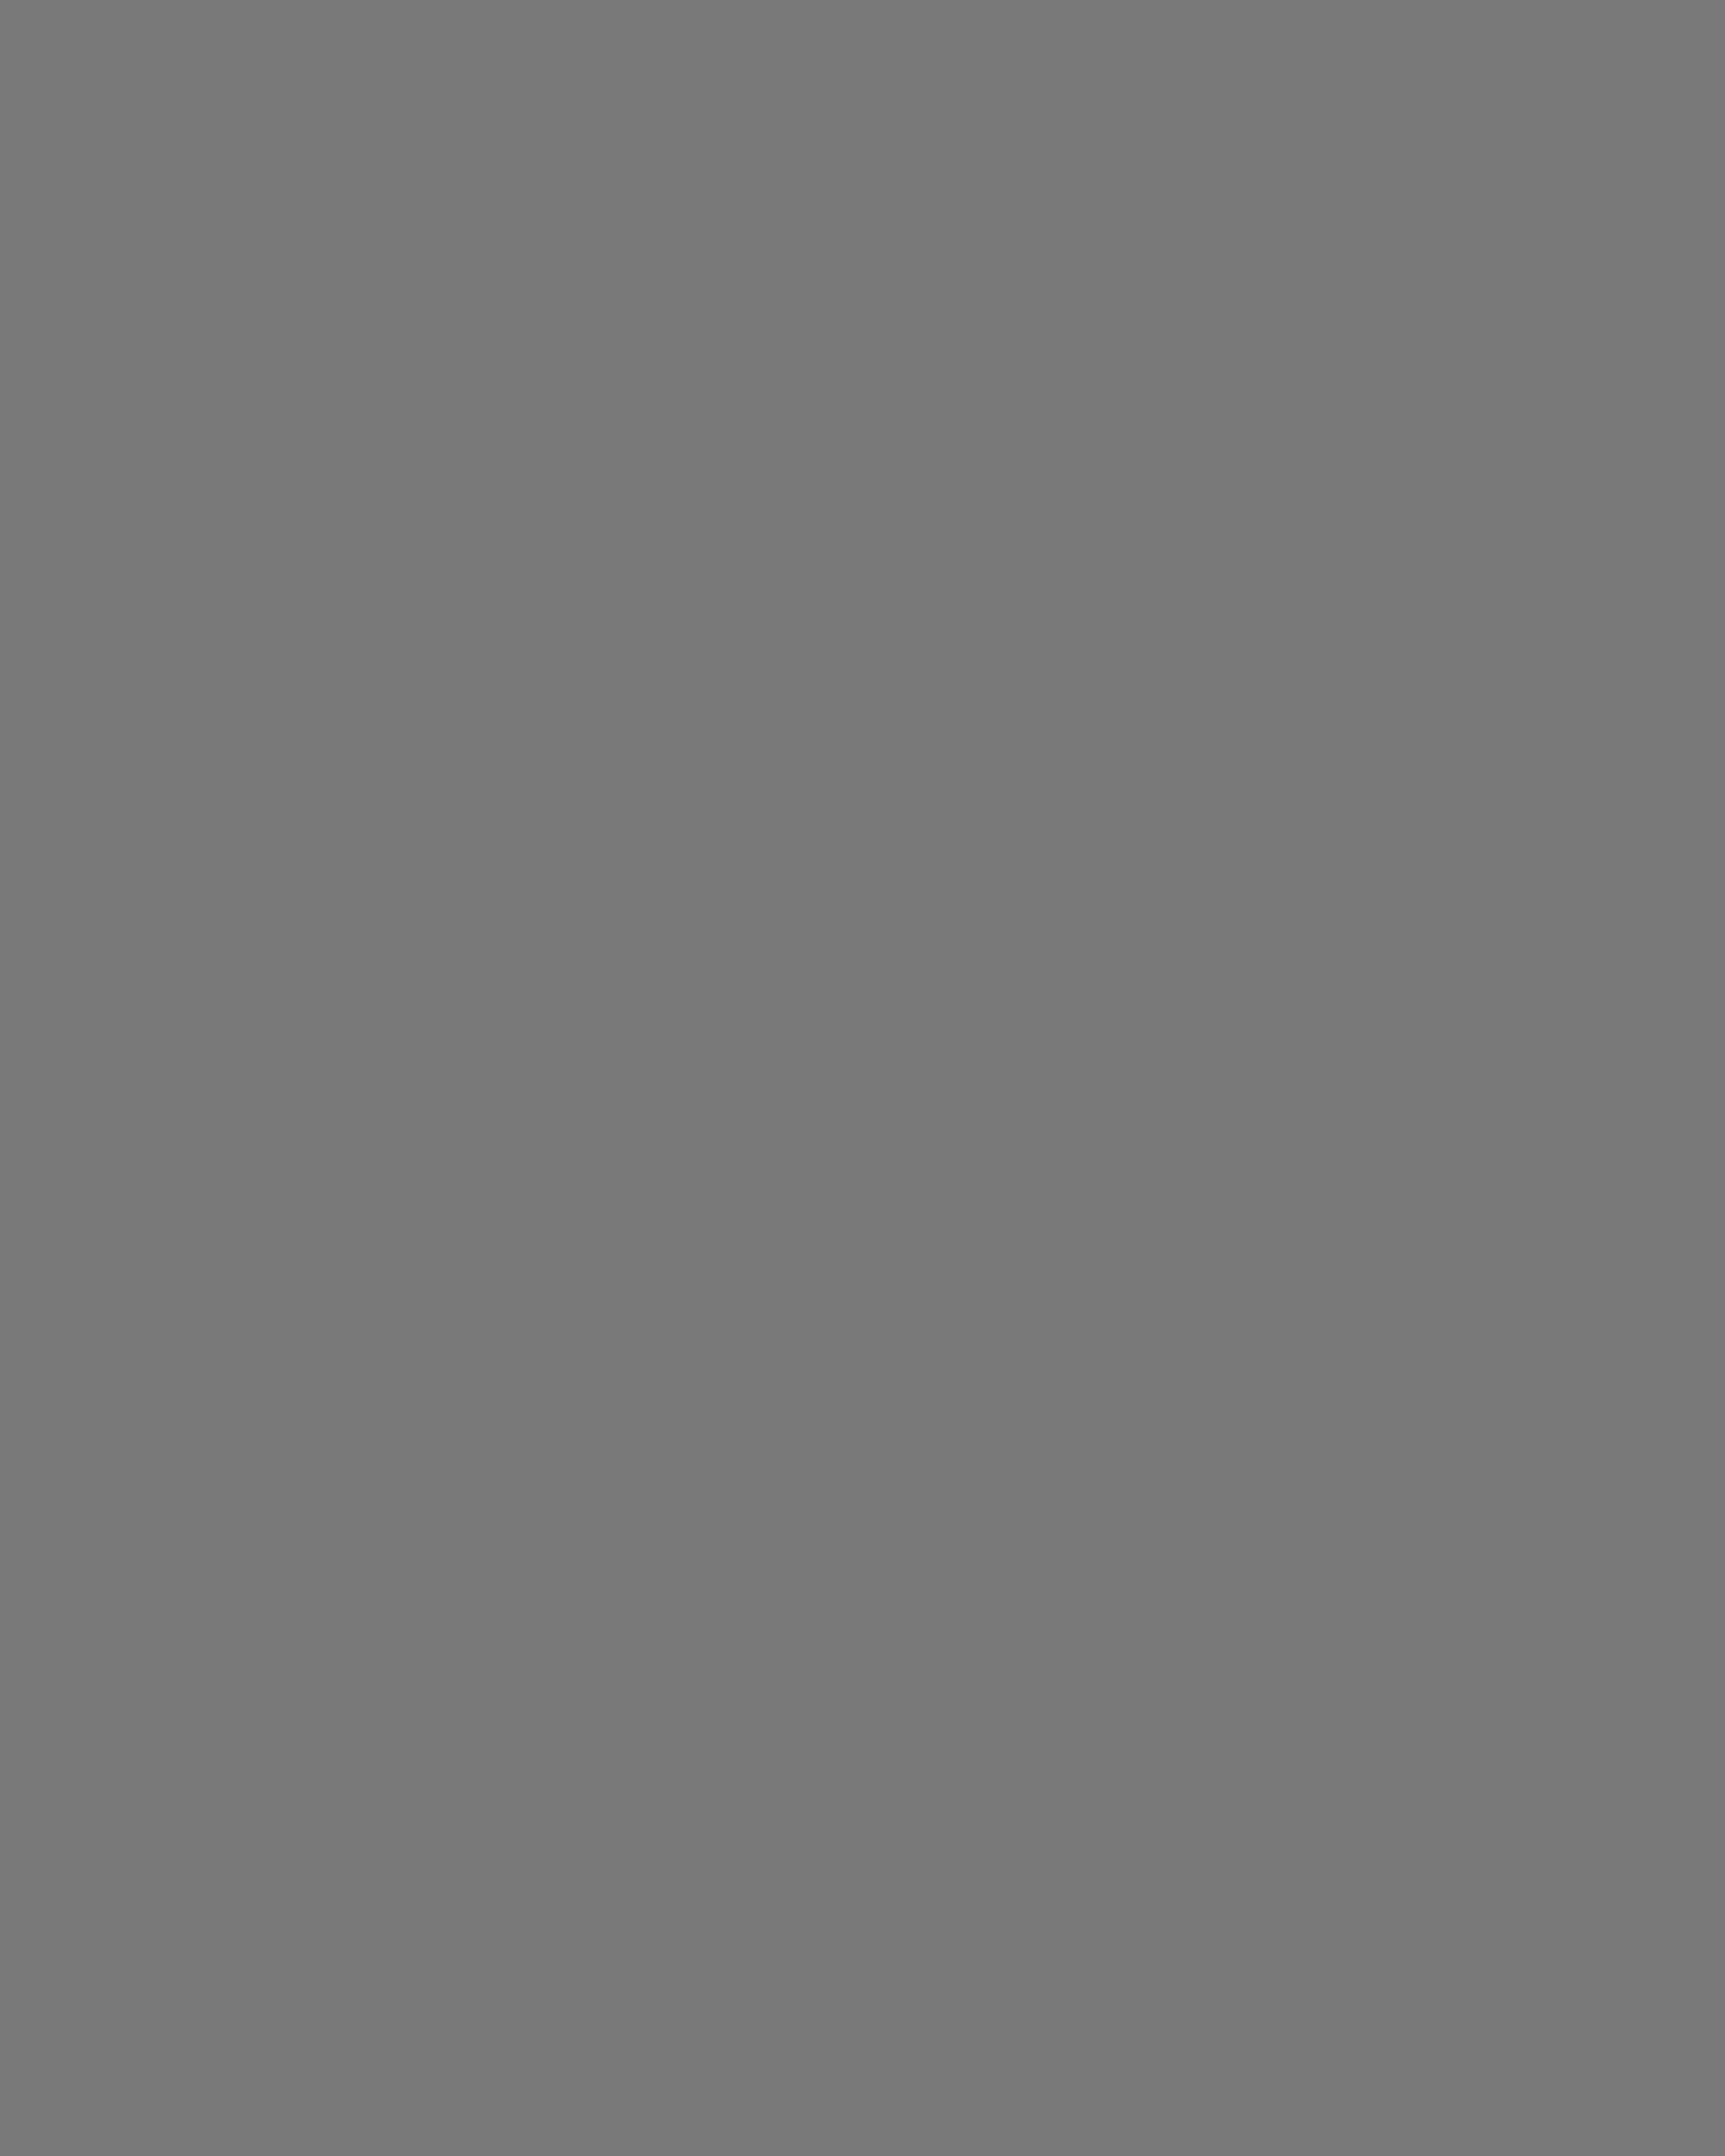 Роберт Рождественский за работой. Москва, 1980-е годы. Фотография: Государственный музей истории литературы, искусства и культуры Алтая, Барнаул